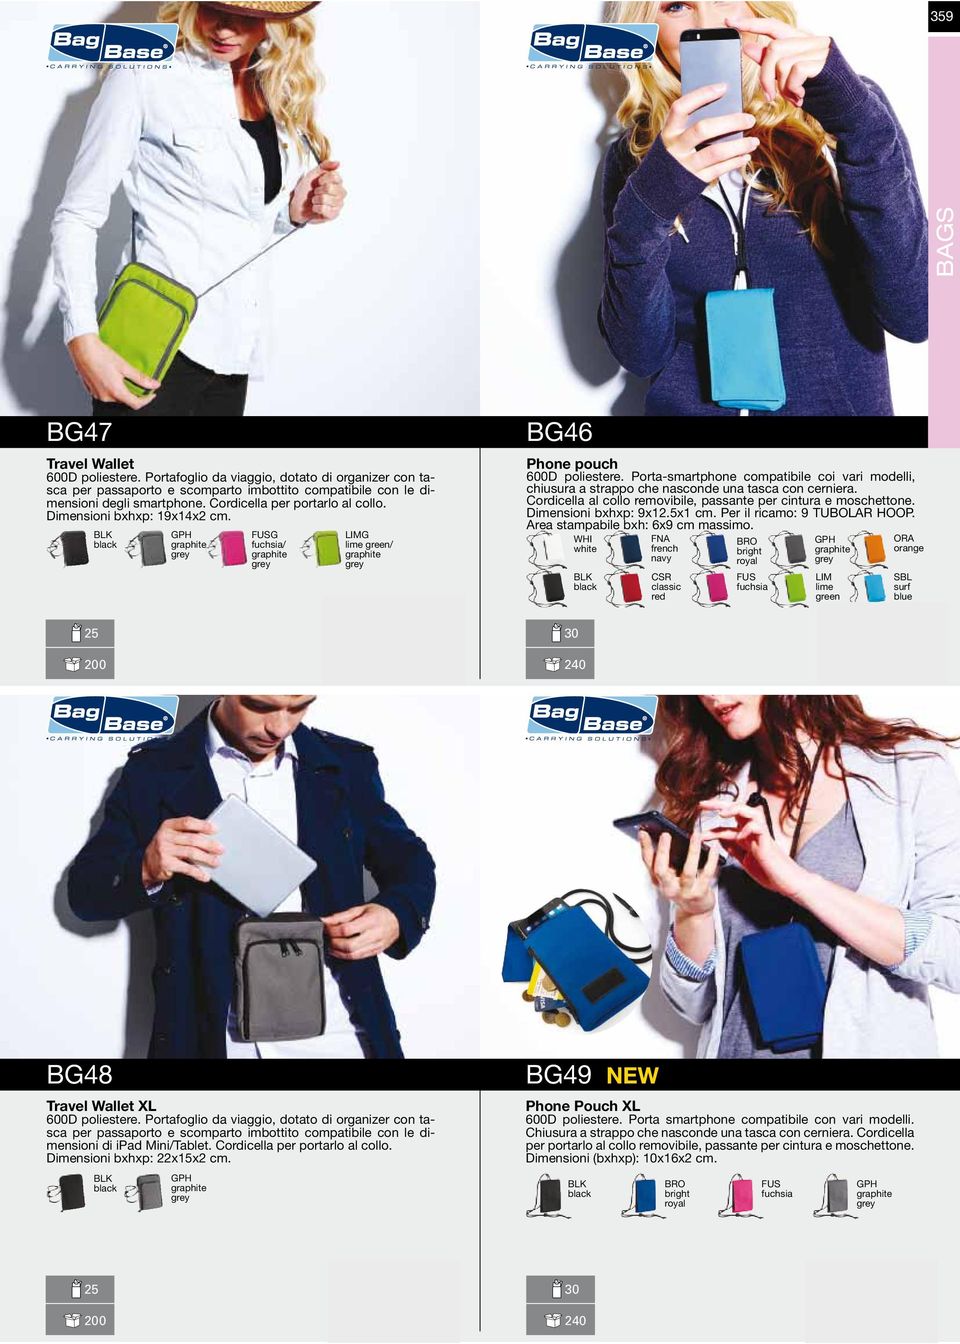 Porta-smartphone compatibile coi vari modelli, chiusura a strappo che nasconde una tasca con cerniera. Cordicella al collo removibile, passante per cintura e moschettone. Dimensioni bxhxp: 9x12.x1 cm.